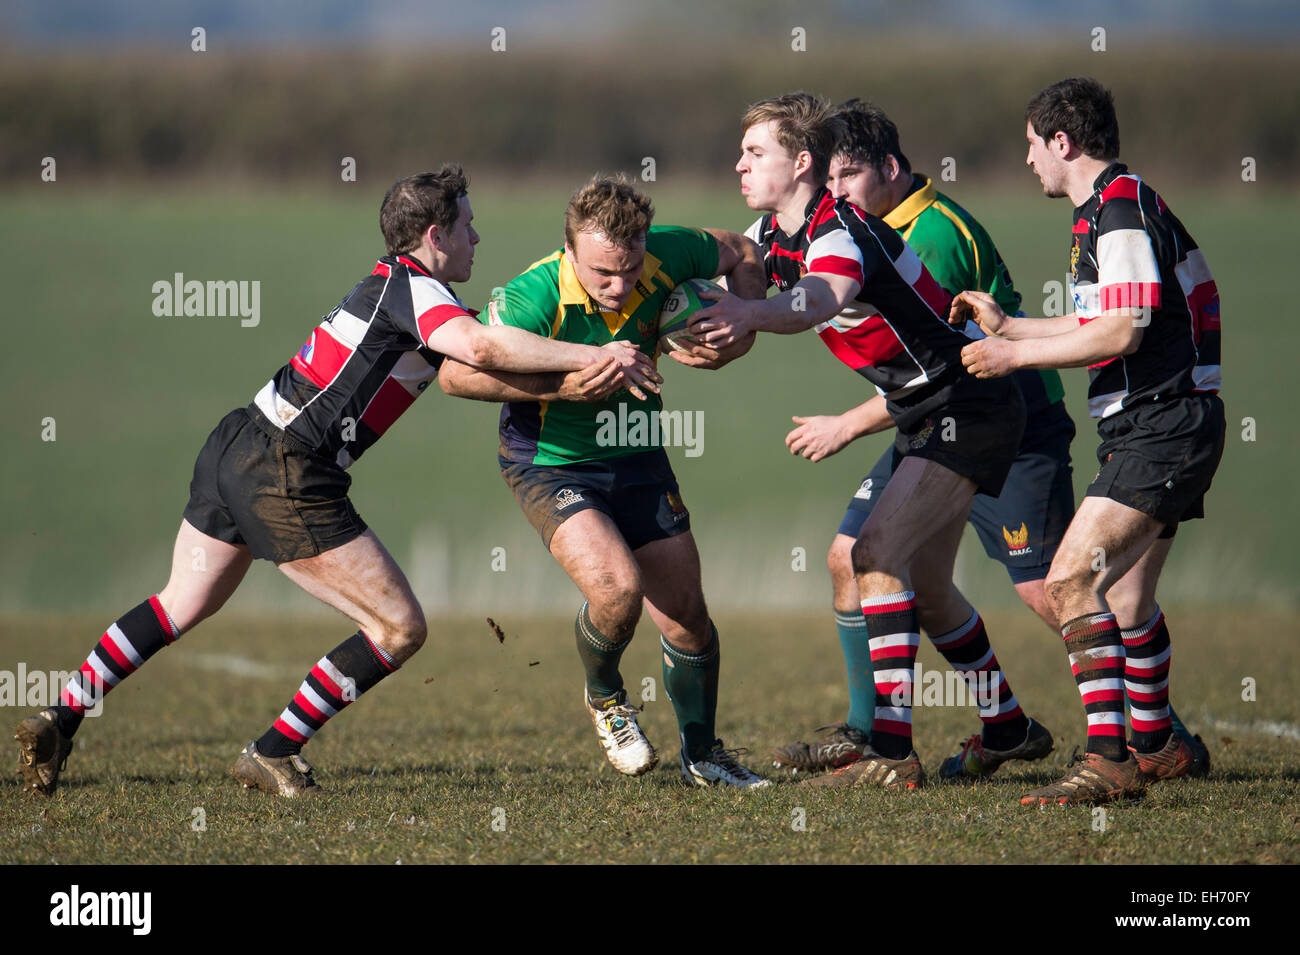 Joueur de Rugby en action - Dorset - Angleterre. Banque D'Images